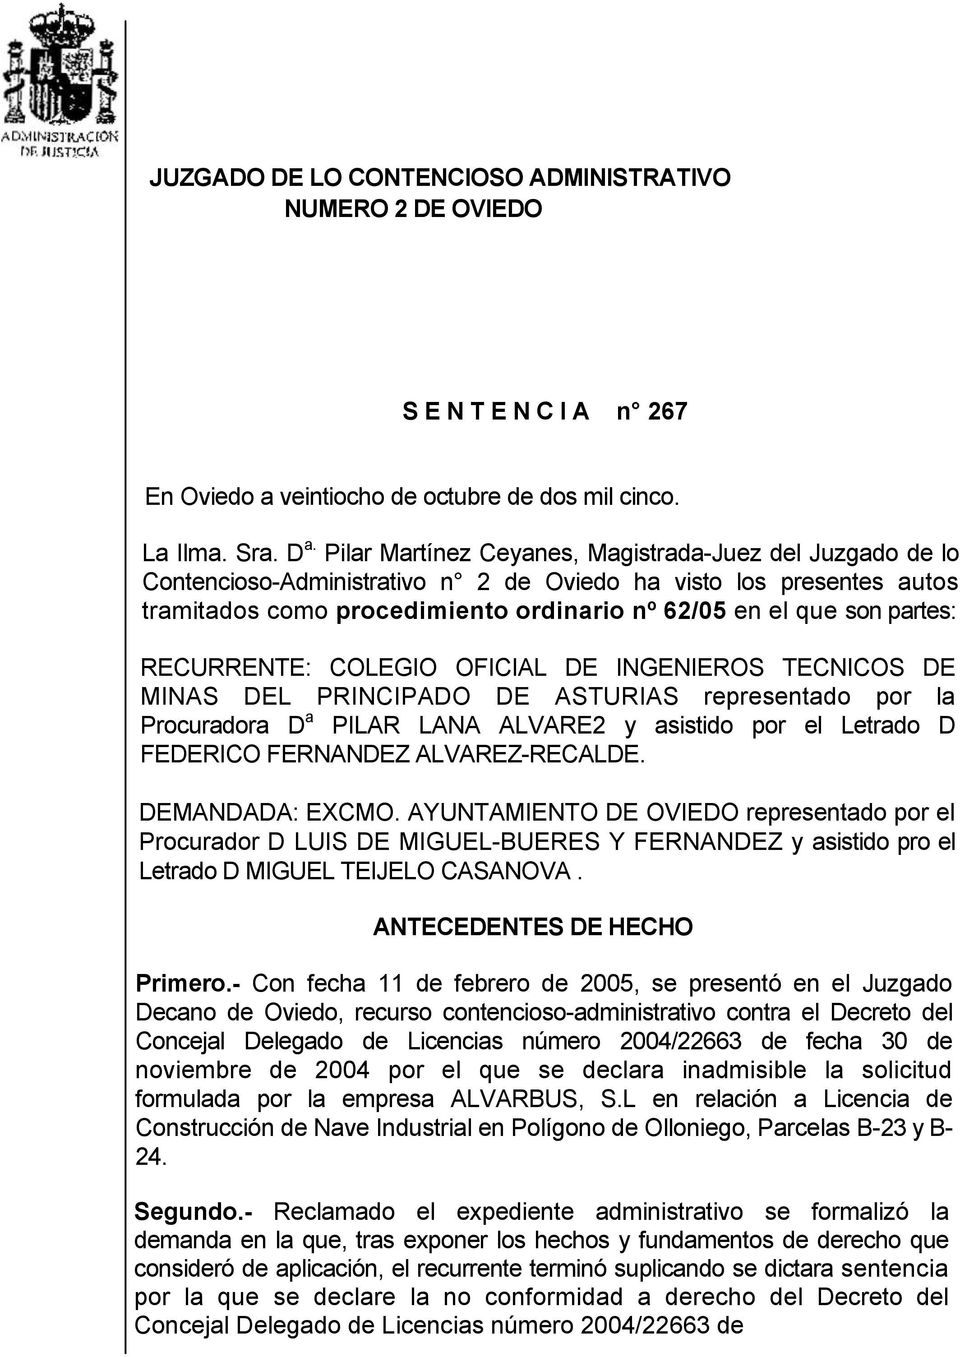 RECURRENTE: COLEGIO OFICIAL DE INGENIEROS TECNICOS DE MINAS DEL PRINCIPADO DE ASTURIAS representado por la Procuradora D a PILAR LANA ALVARE2 y asistido por el Letrado D FEDERICO FERNANDEZ